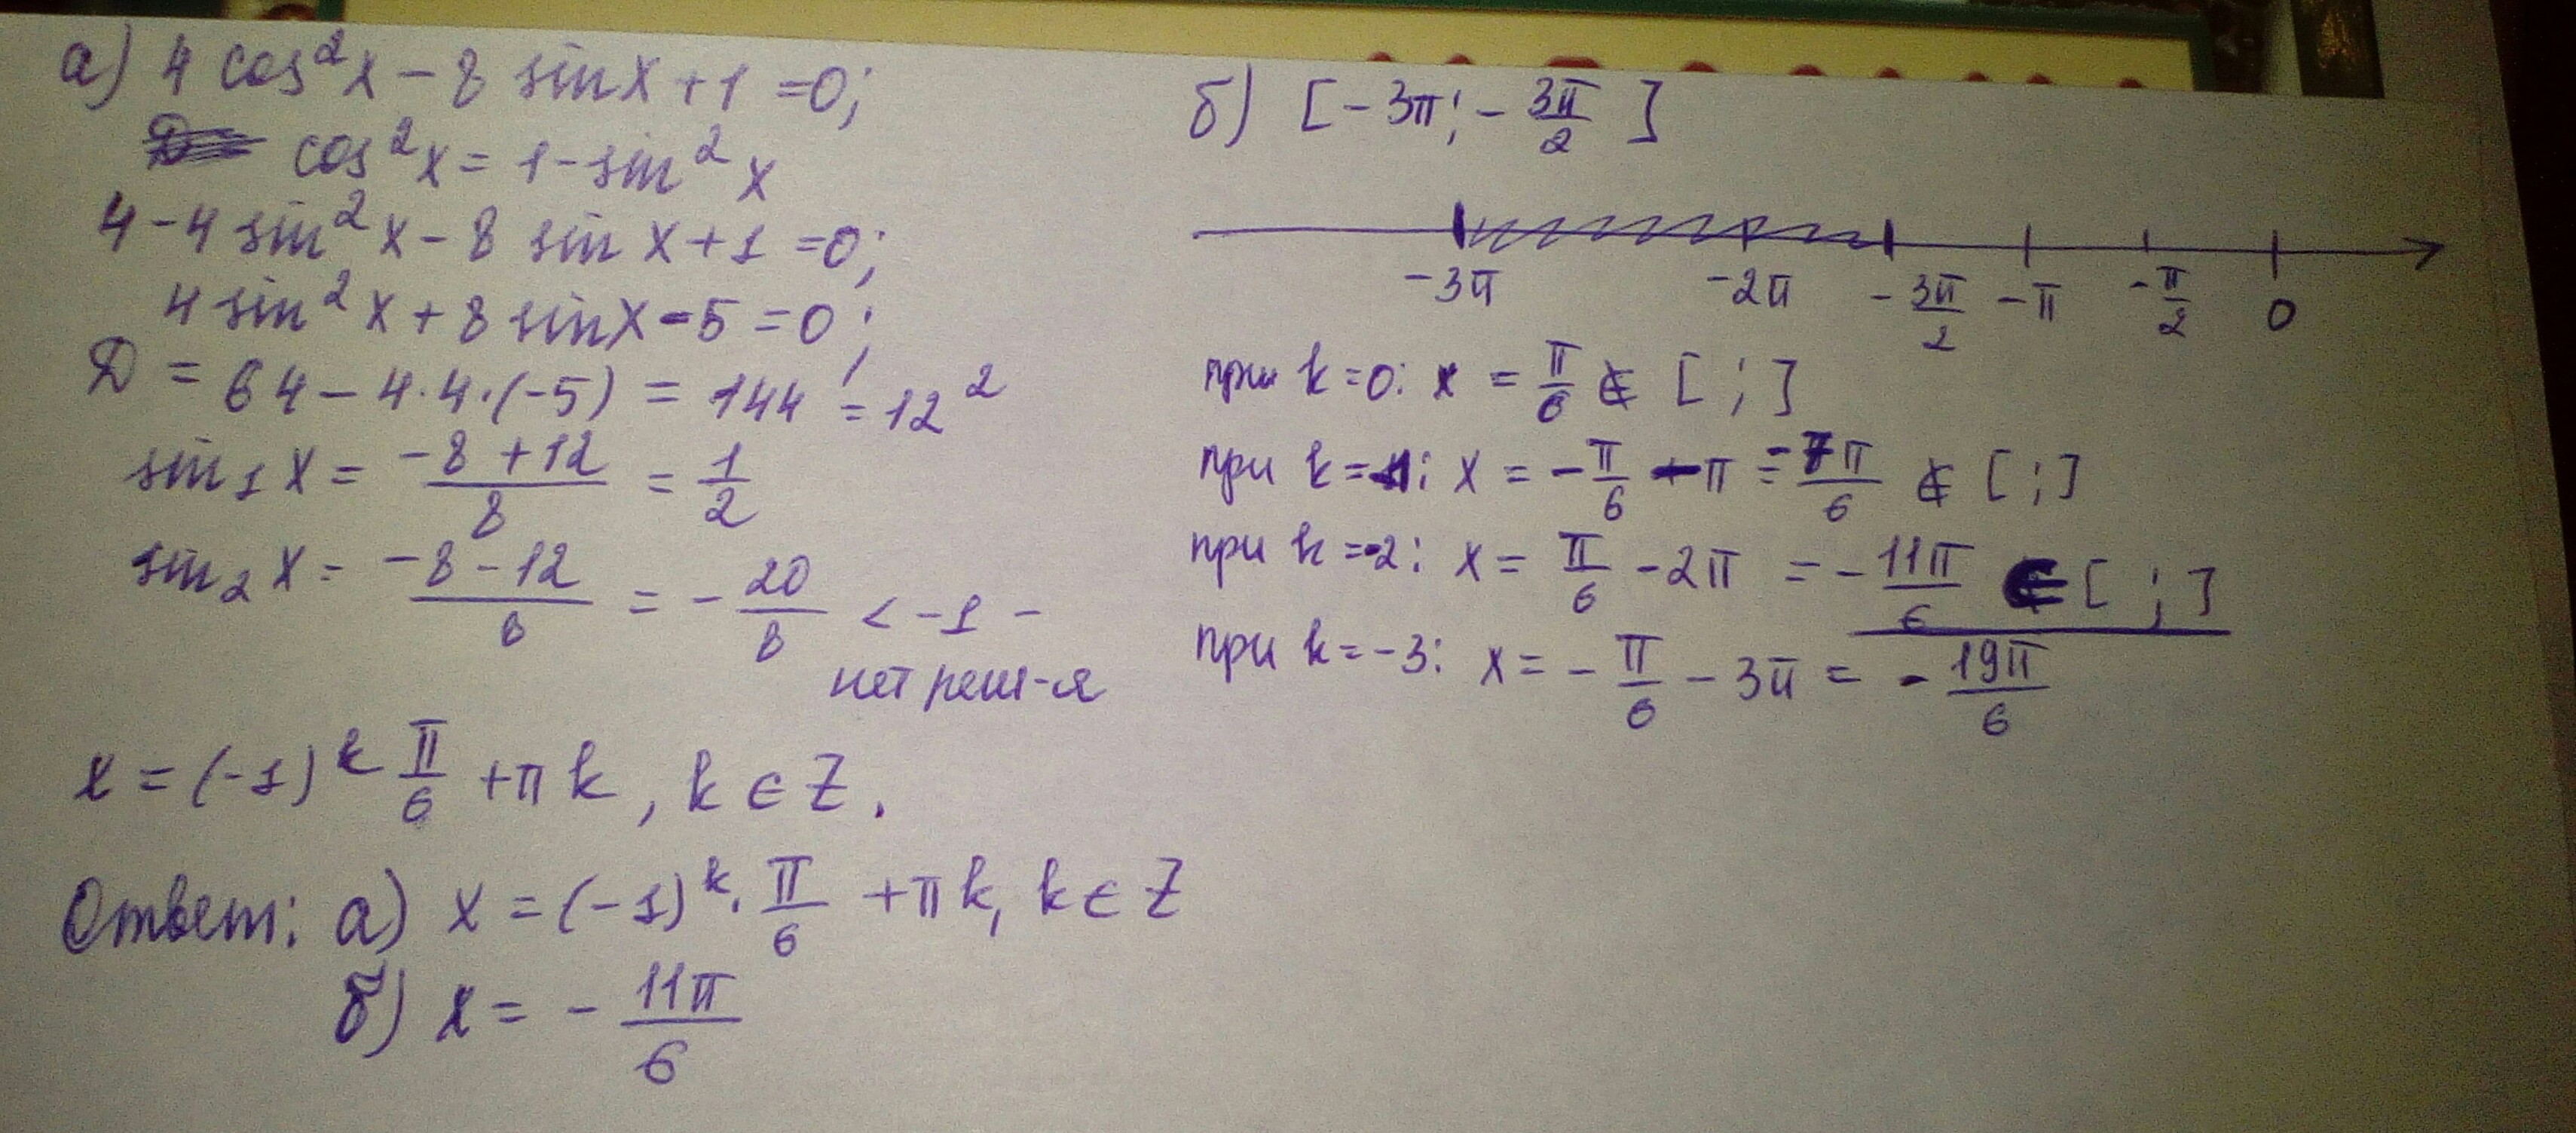 X3 4x 1 0. Sin2x cos Pi 2 x корень из 3. 2x Pi/4. Cos 4x Pi 4 корень из 2 2. Cos2x.